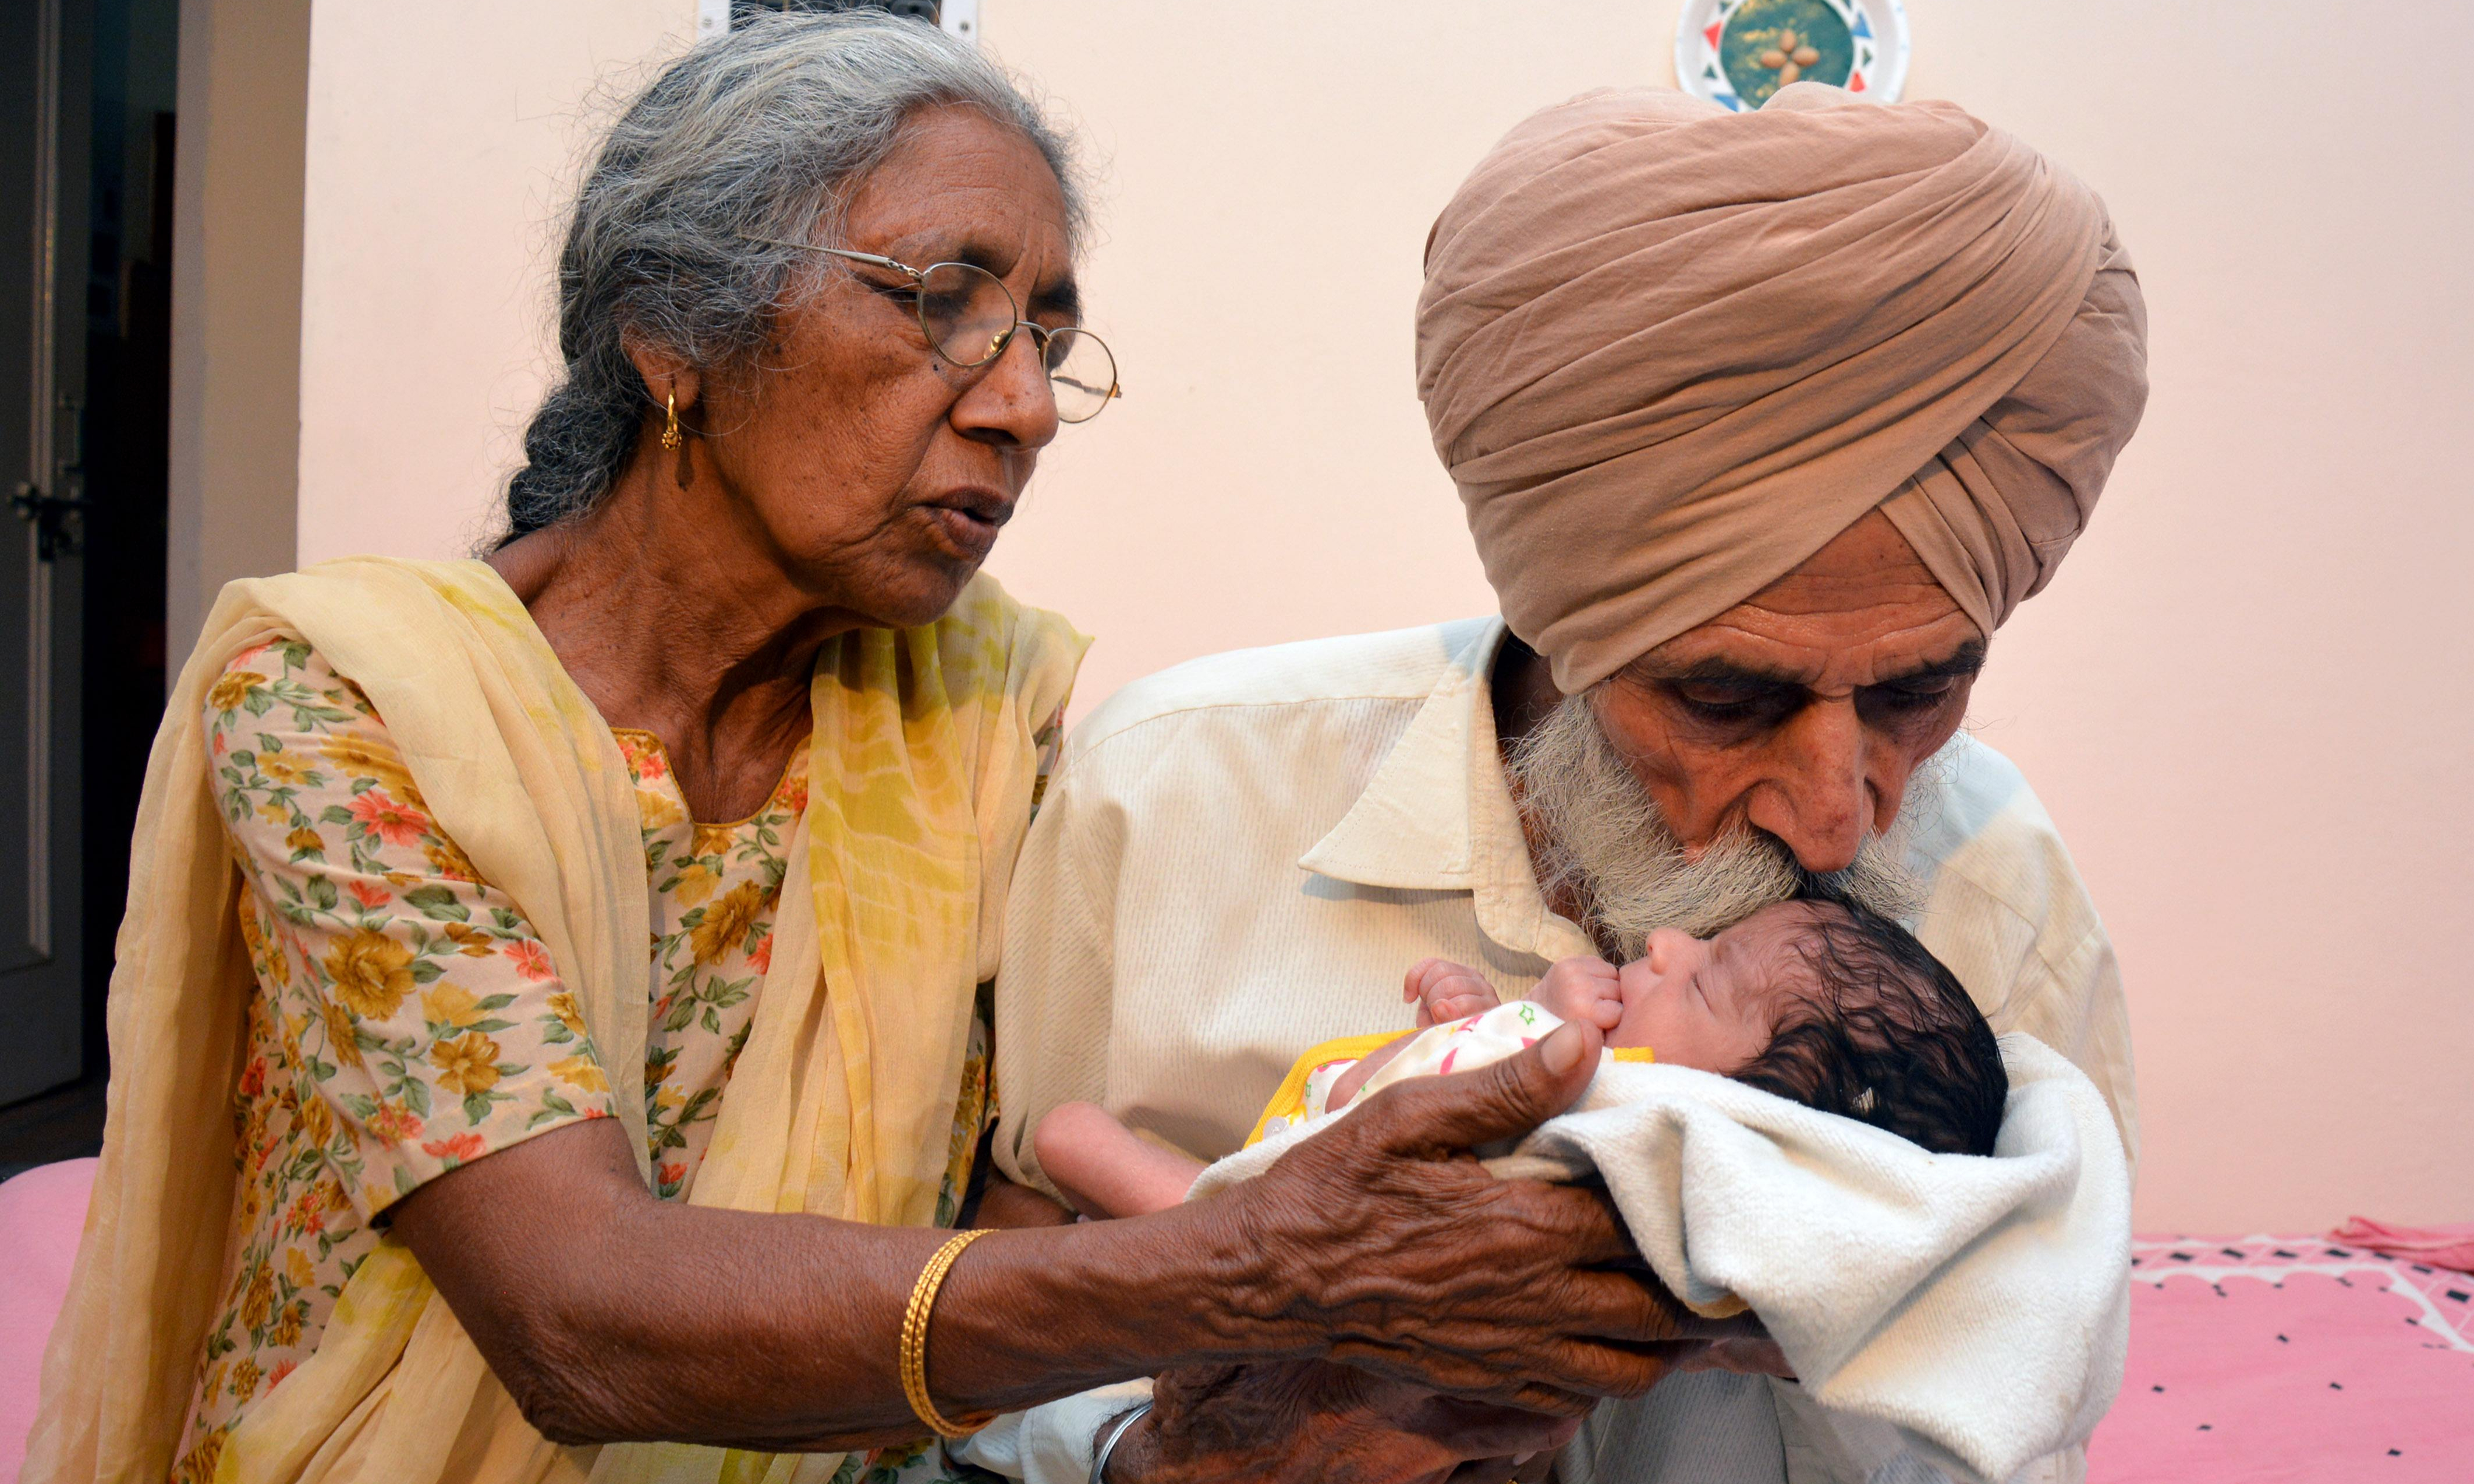 Женщина в Индии в 70 лет родила ребенка. Самая возрастная роженица в мире.